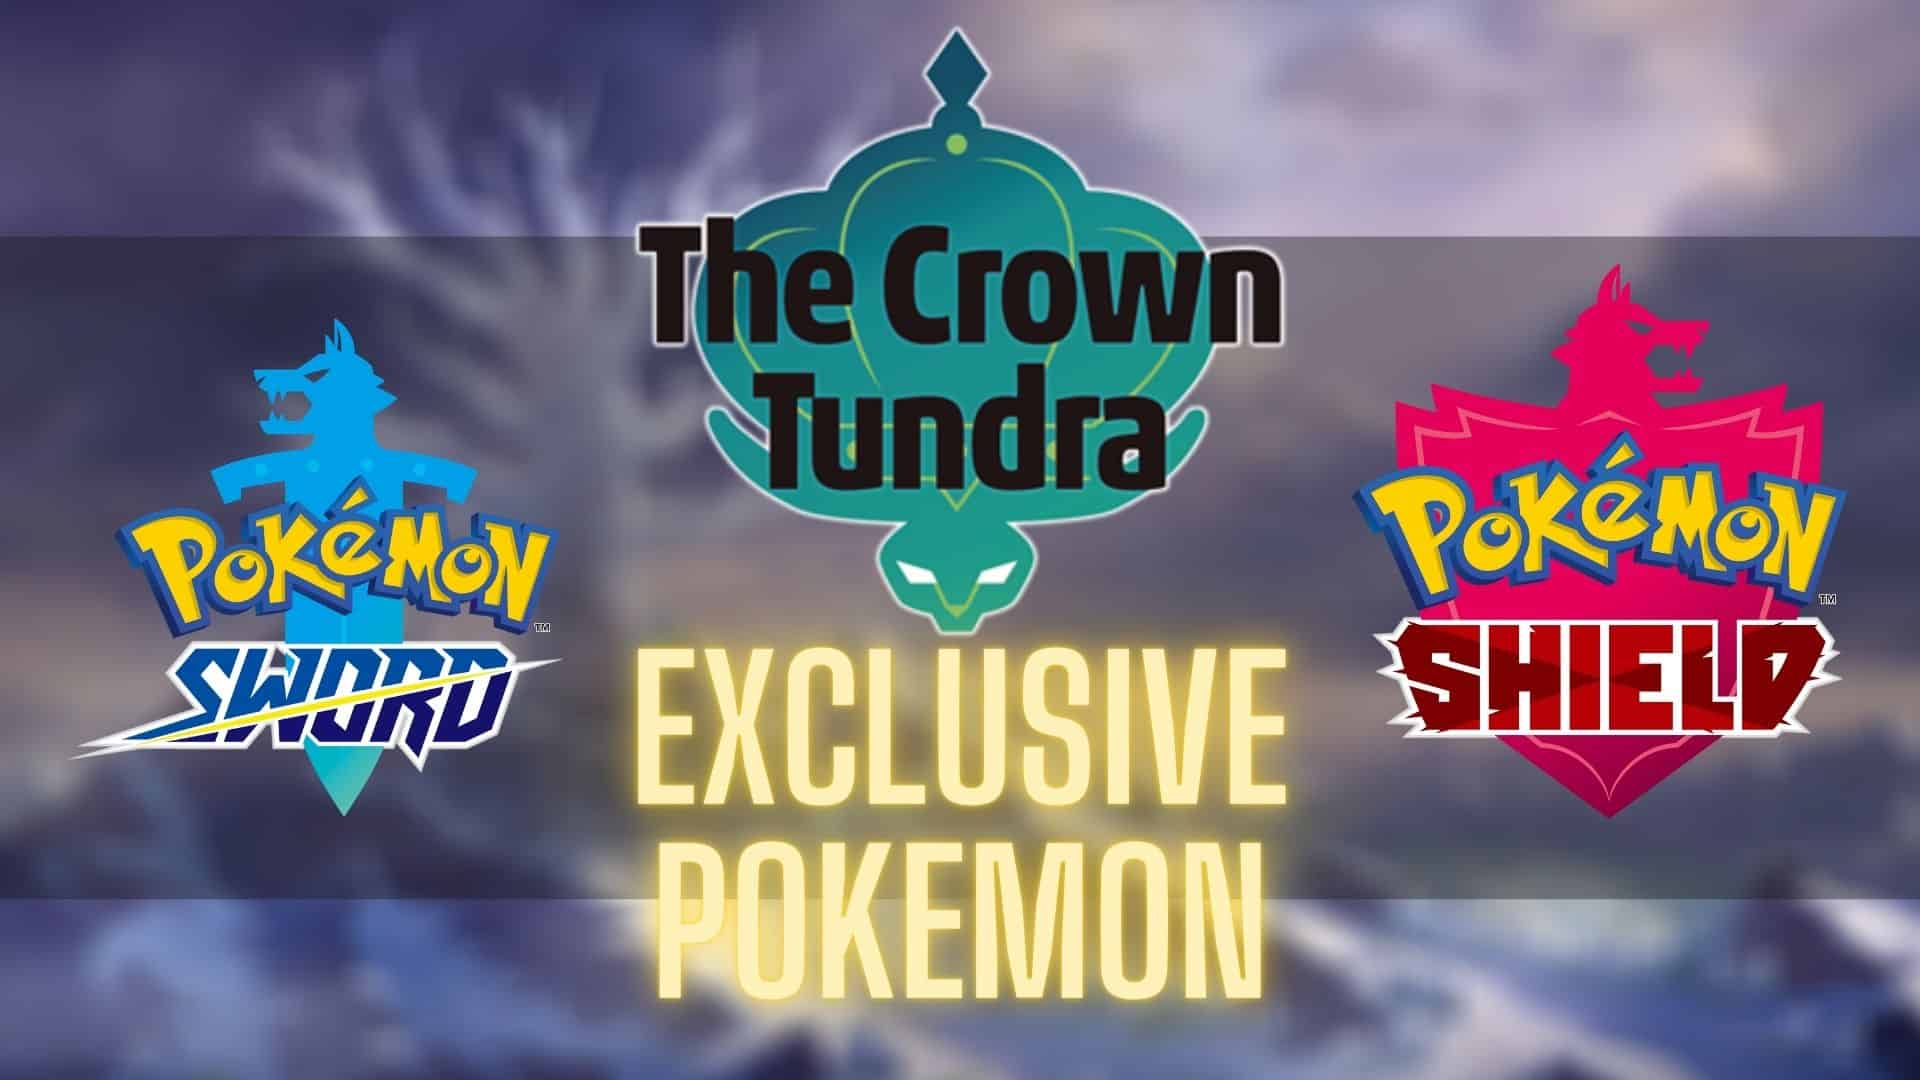 Pokémon Sword & Shield: The Crown - Pokémon Global News